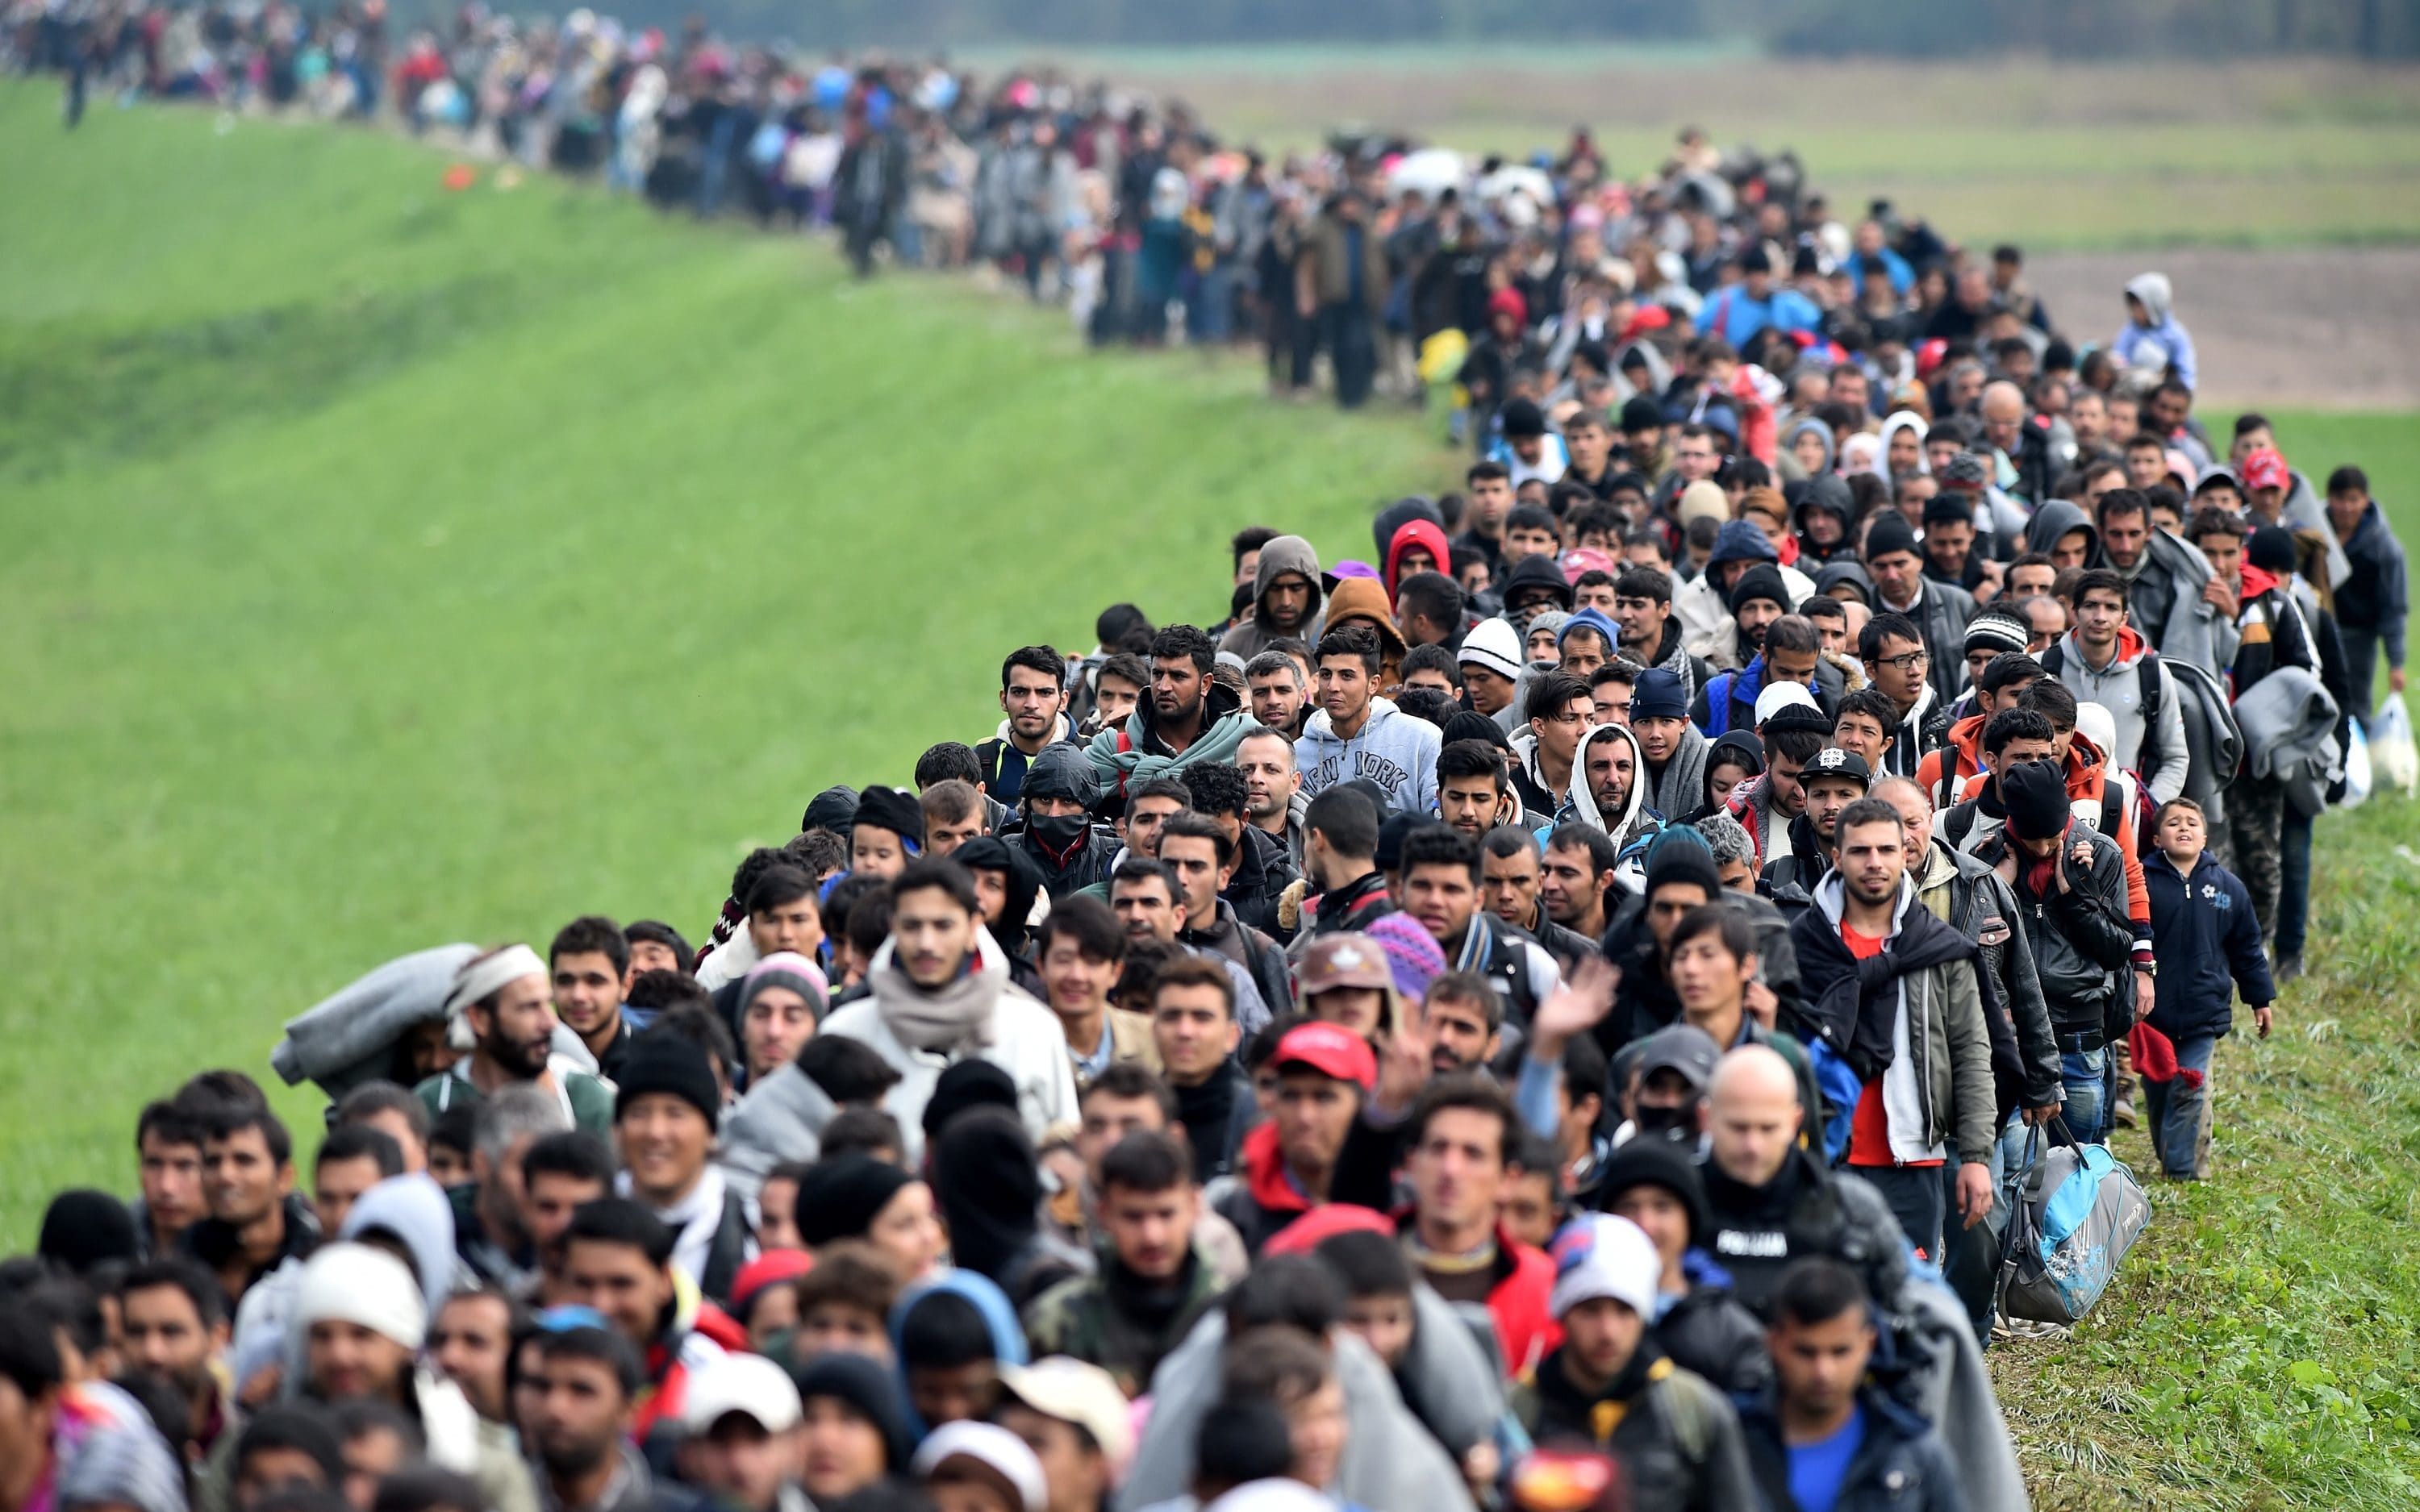 "Беженская волна" в ЕС: куда и почему едут больше всего